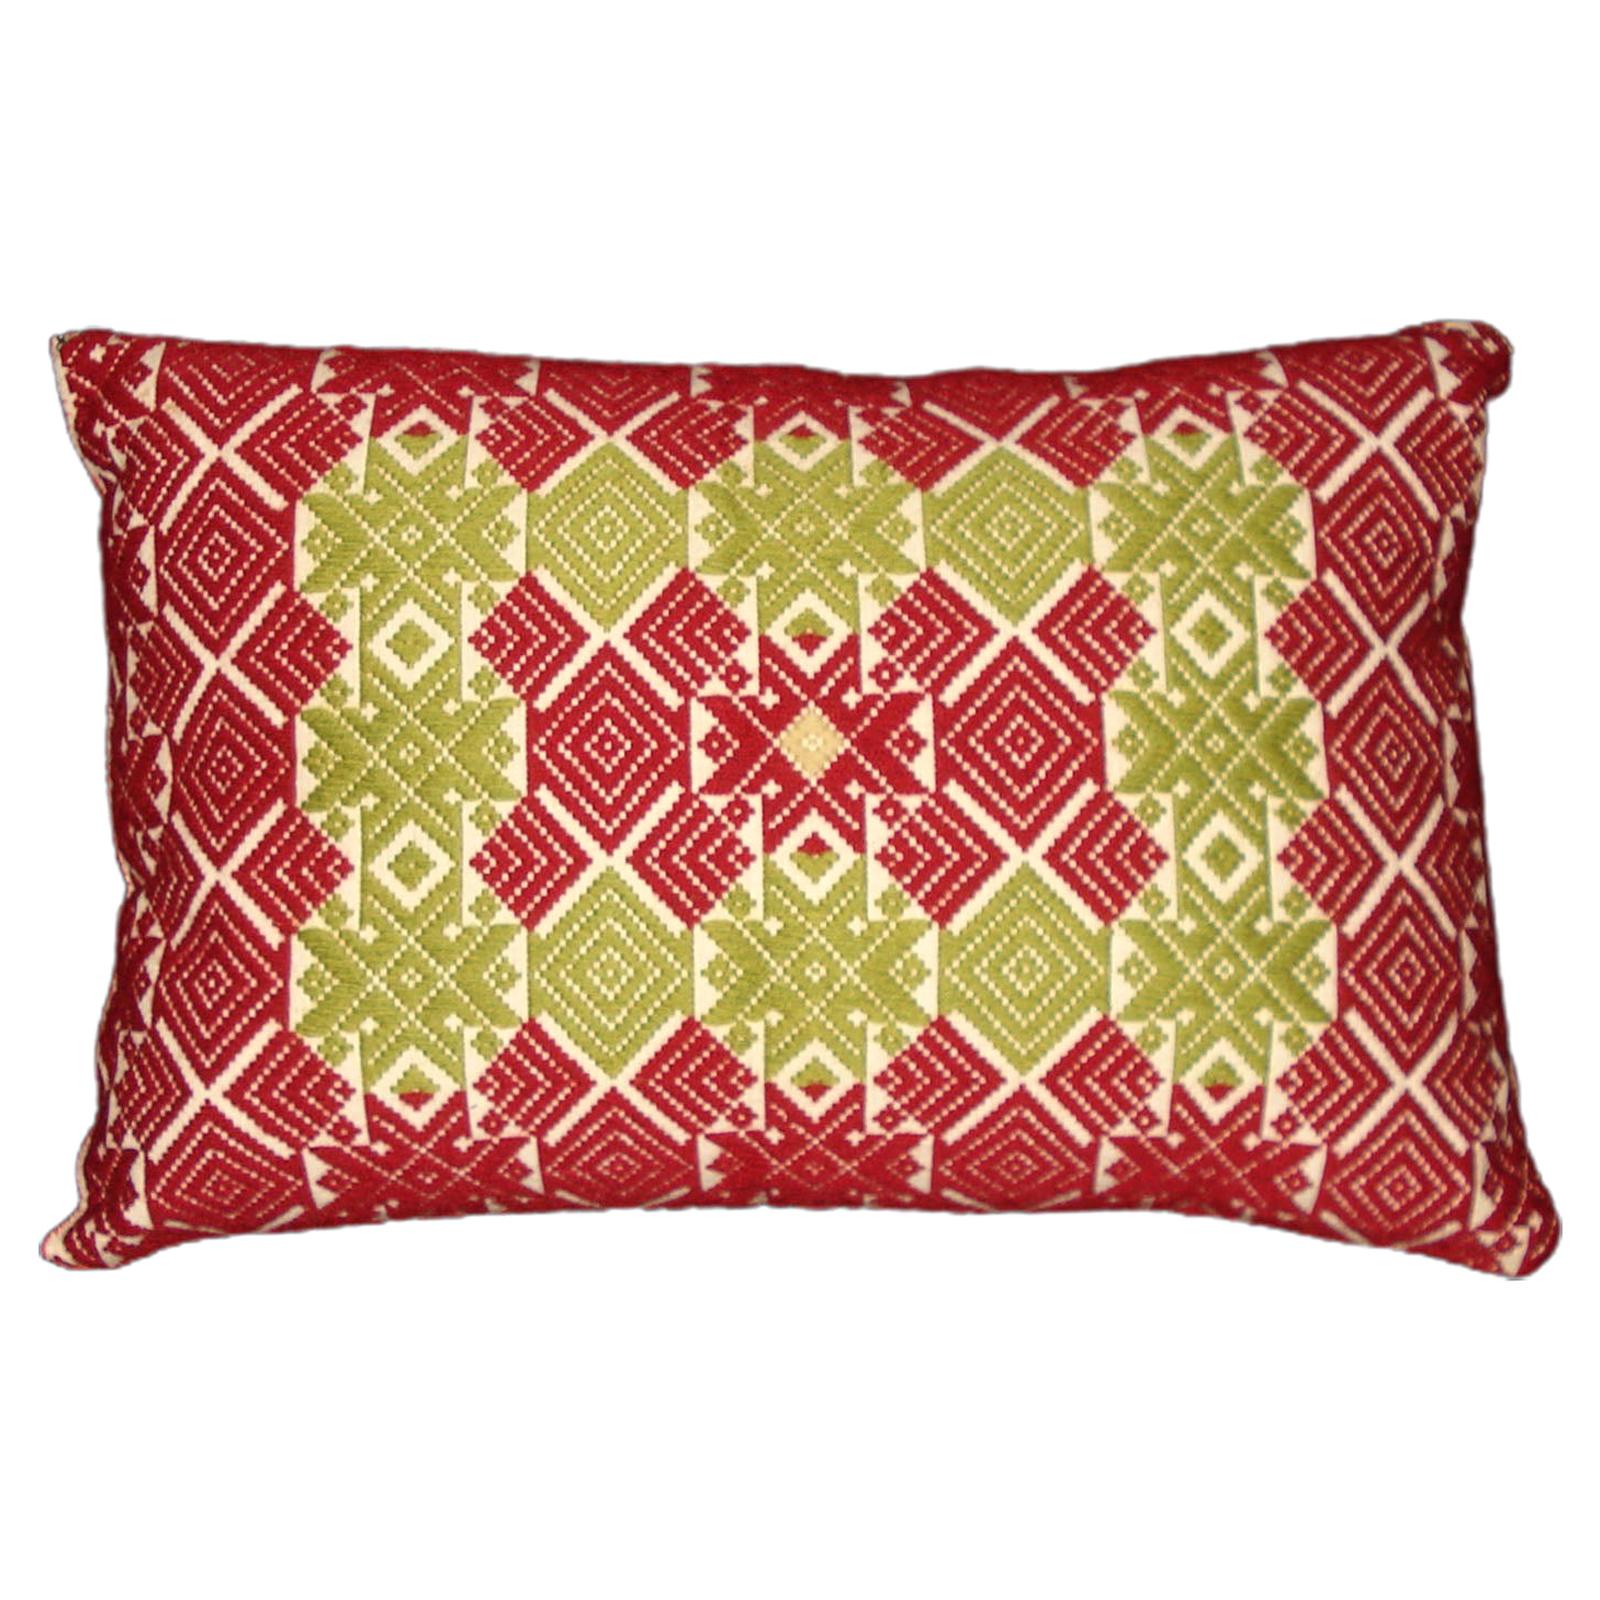 Rollakan Pillow, Hand-Woven Pillow, Sweden 19th Century